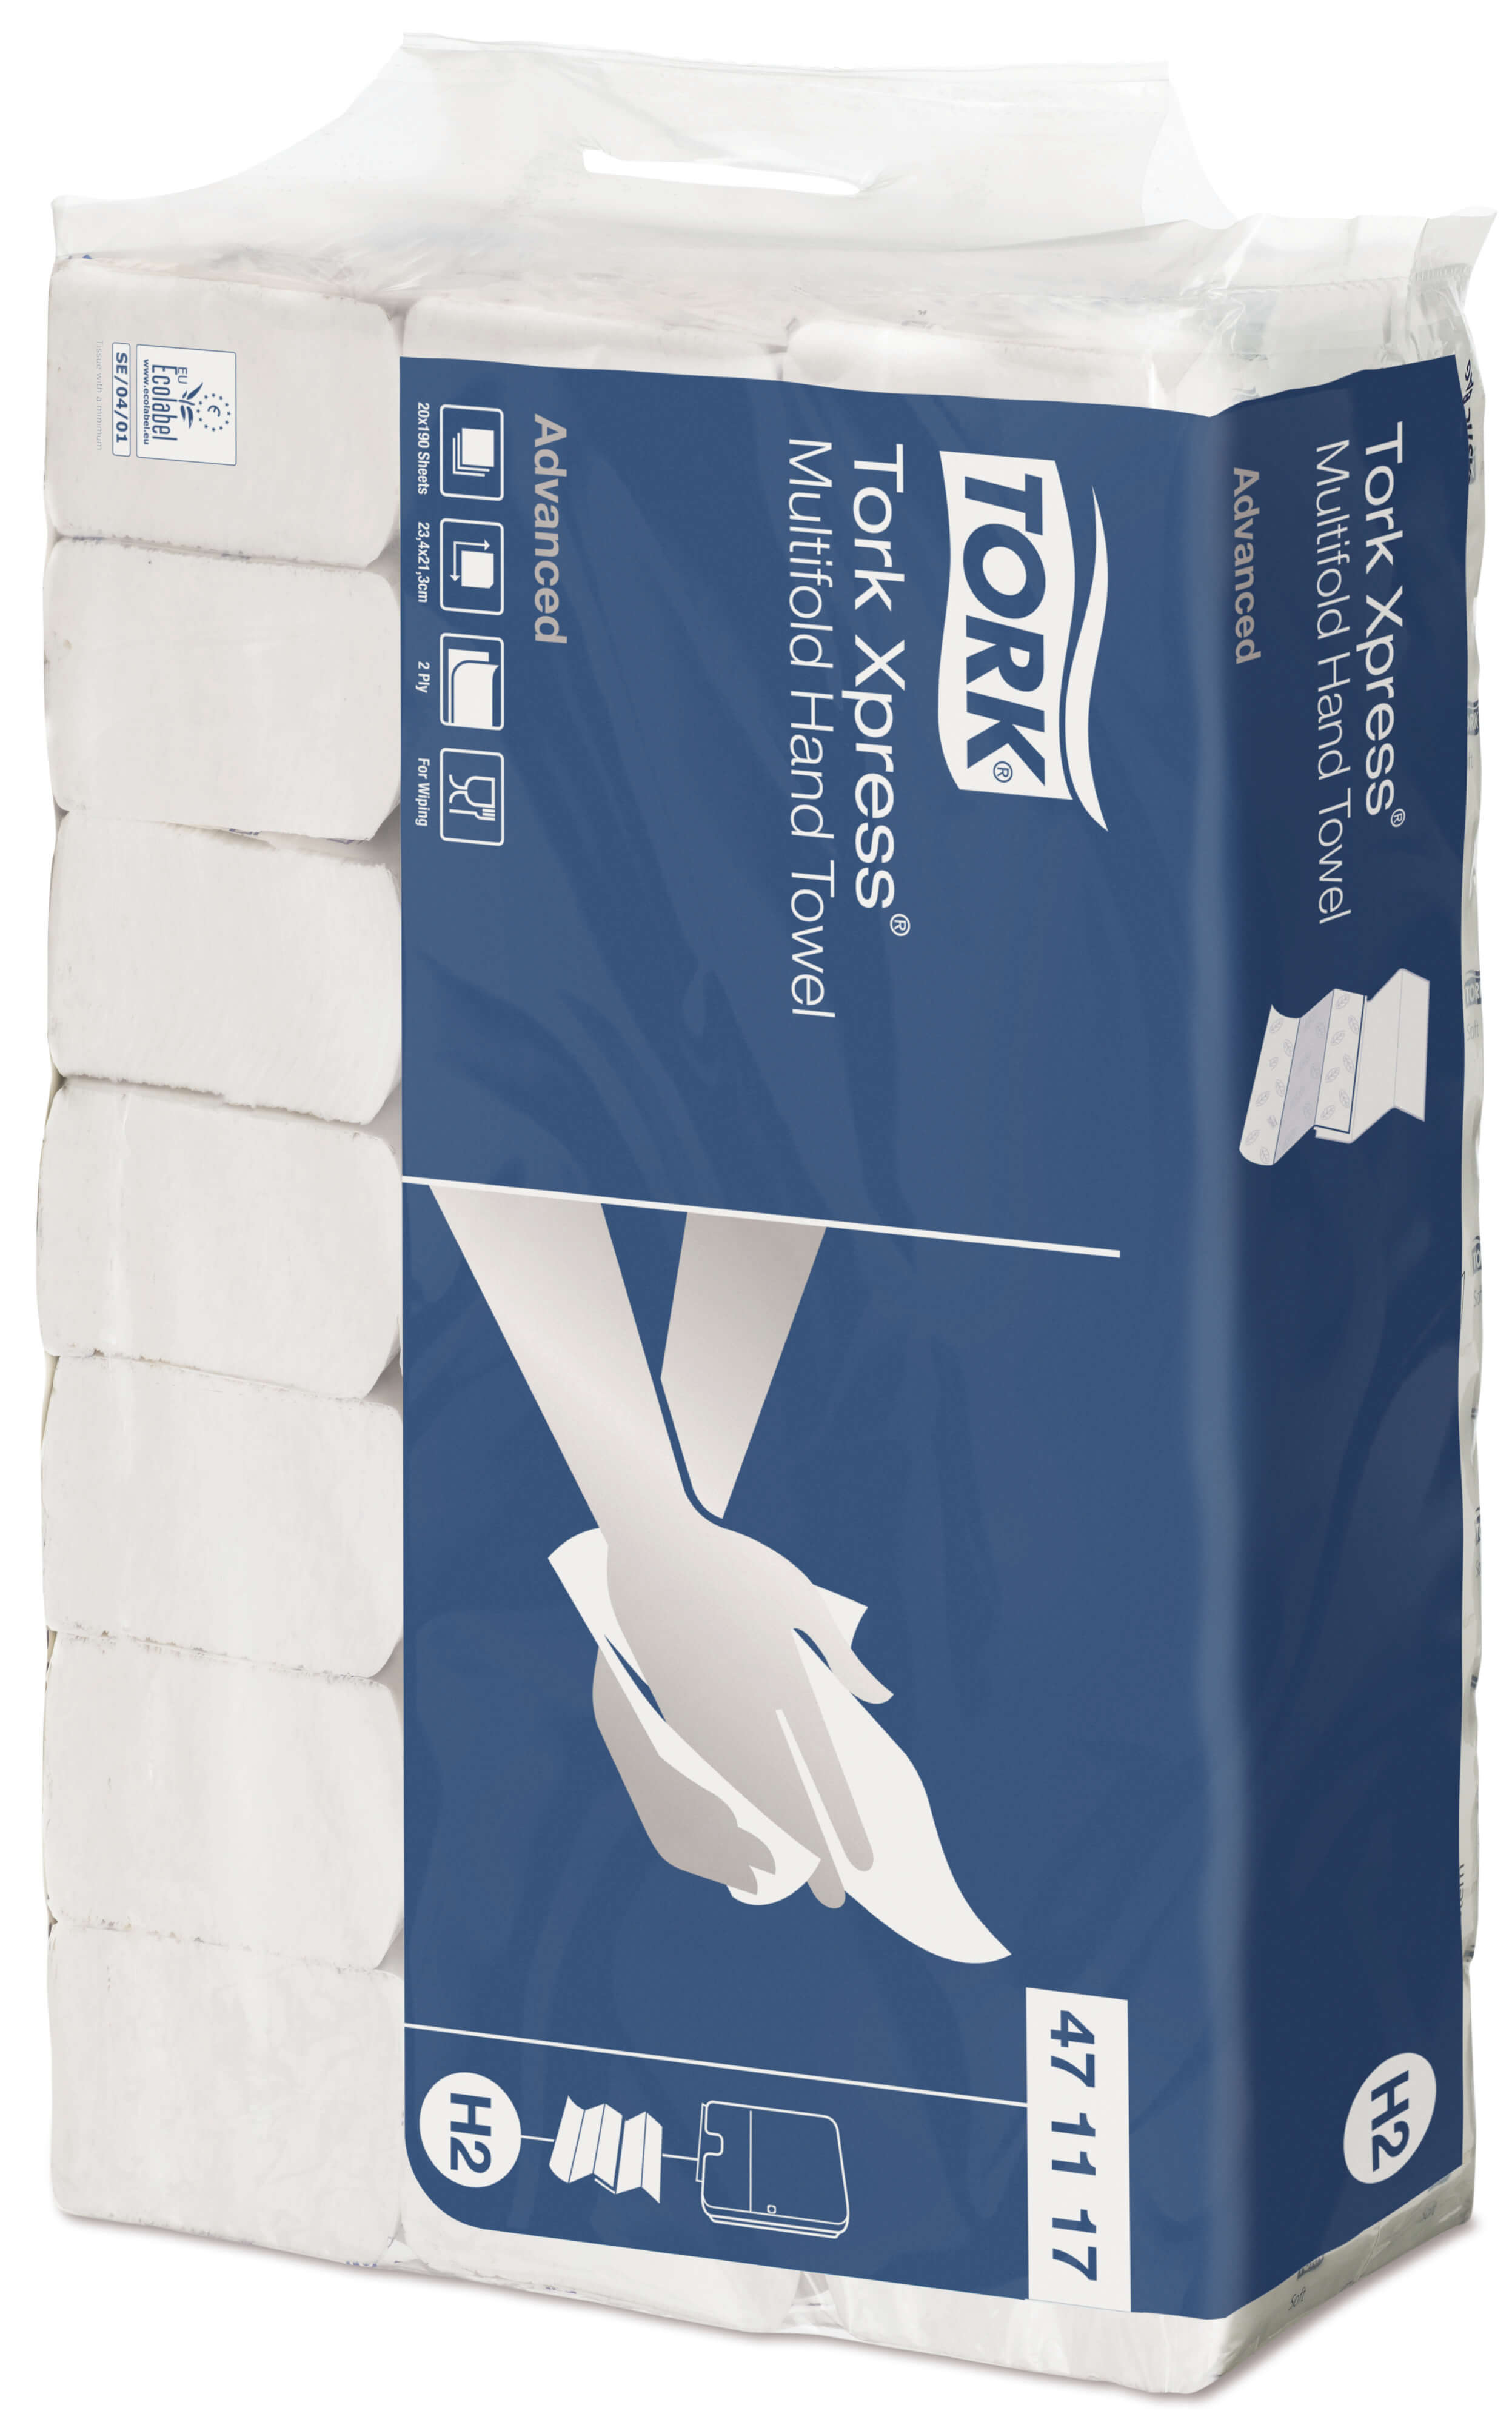 Листовые бумажные полотенца Tork Xpress® Advanced двухслойные, Multifold сложения, 190 листов